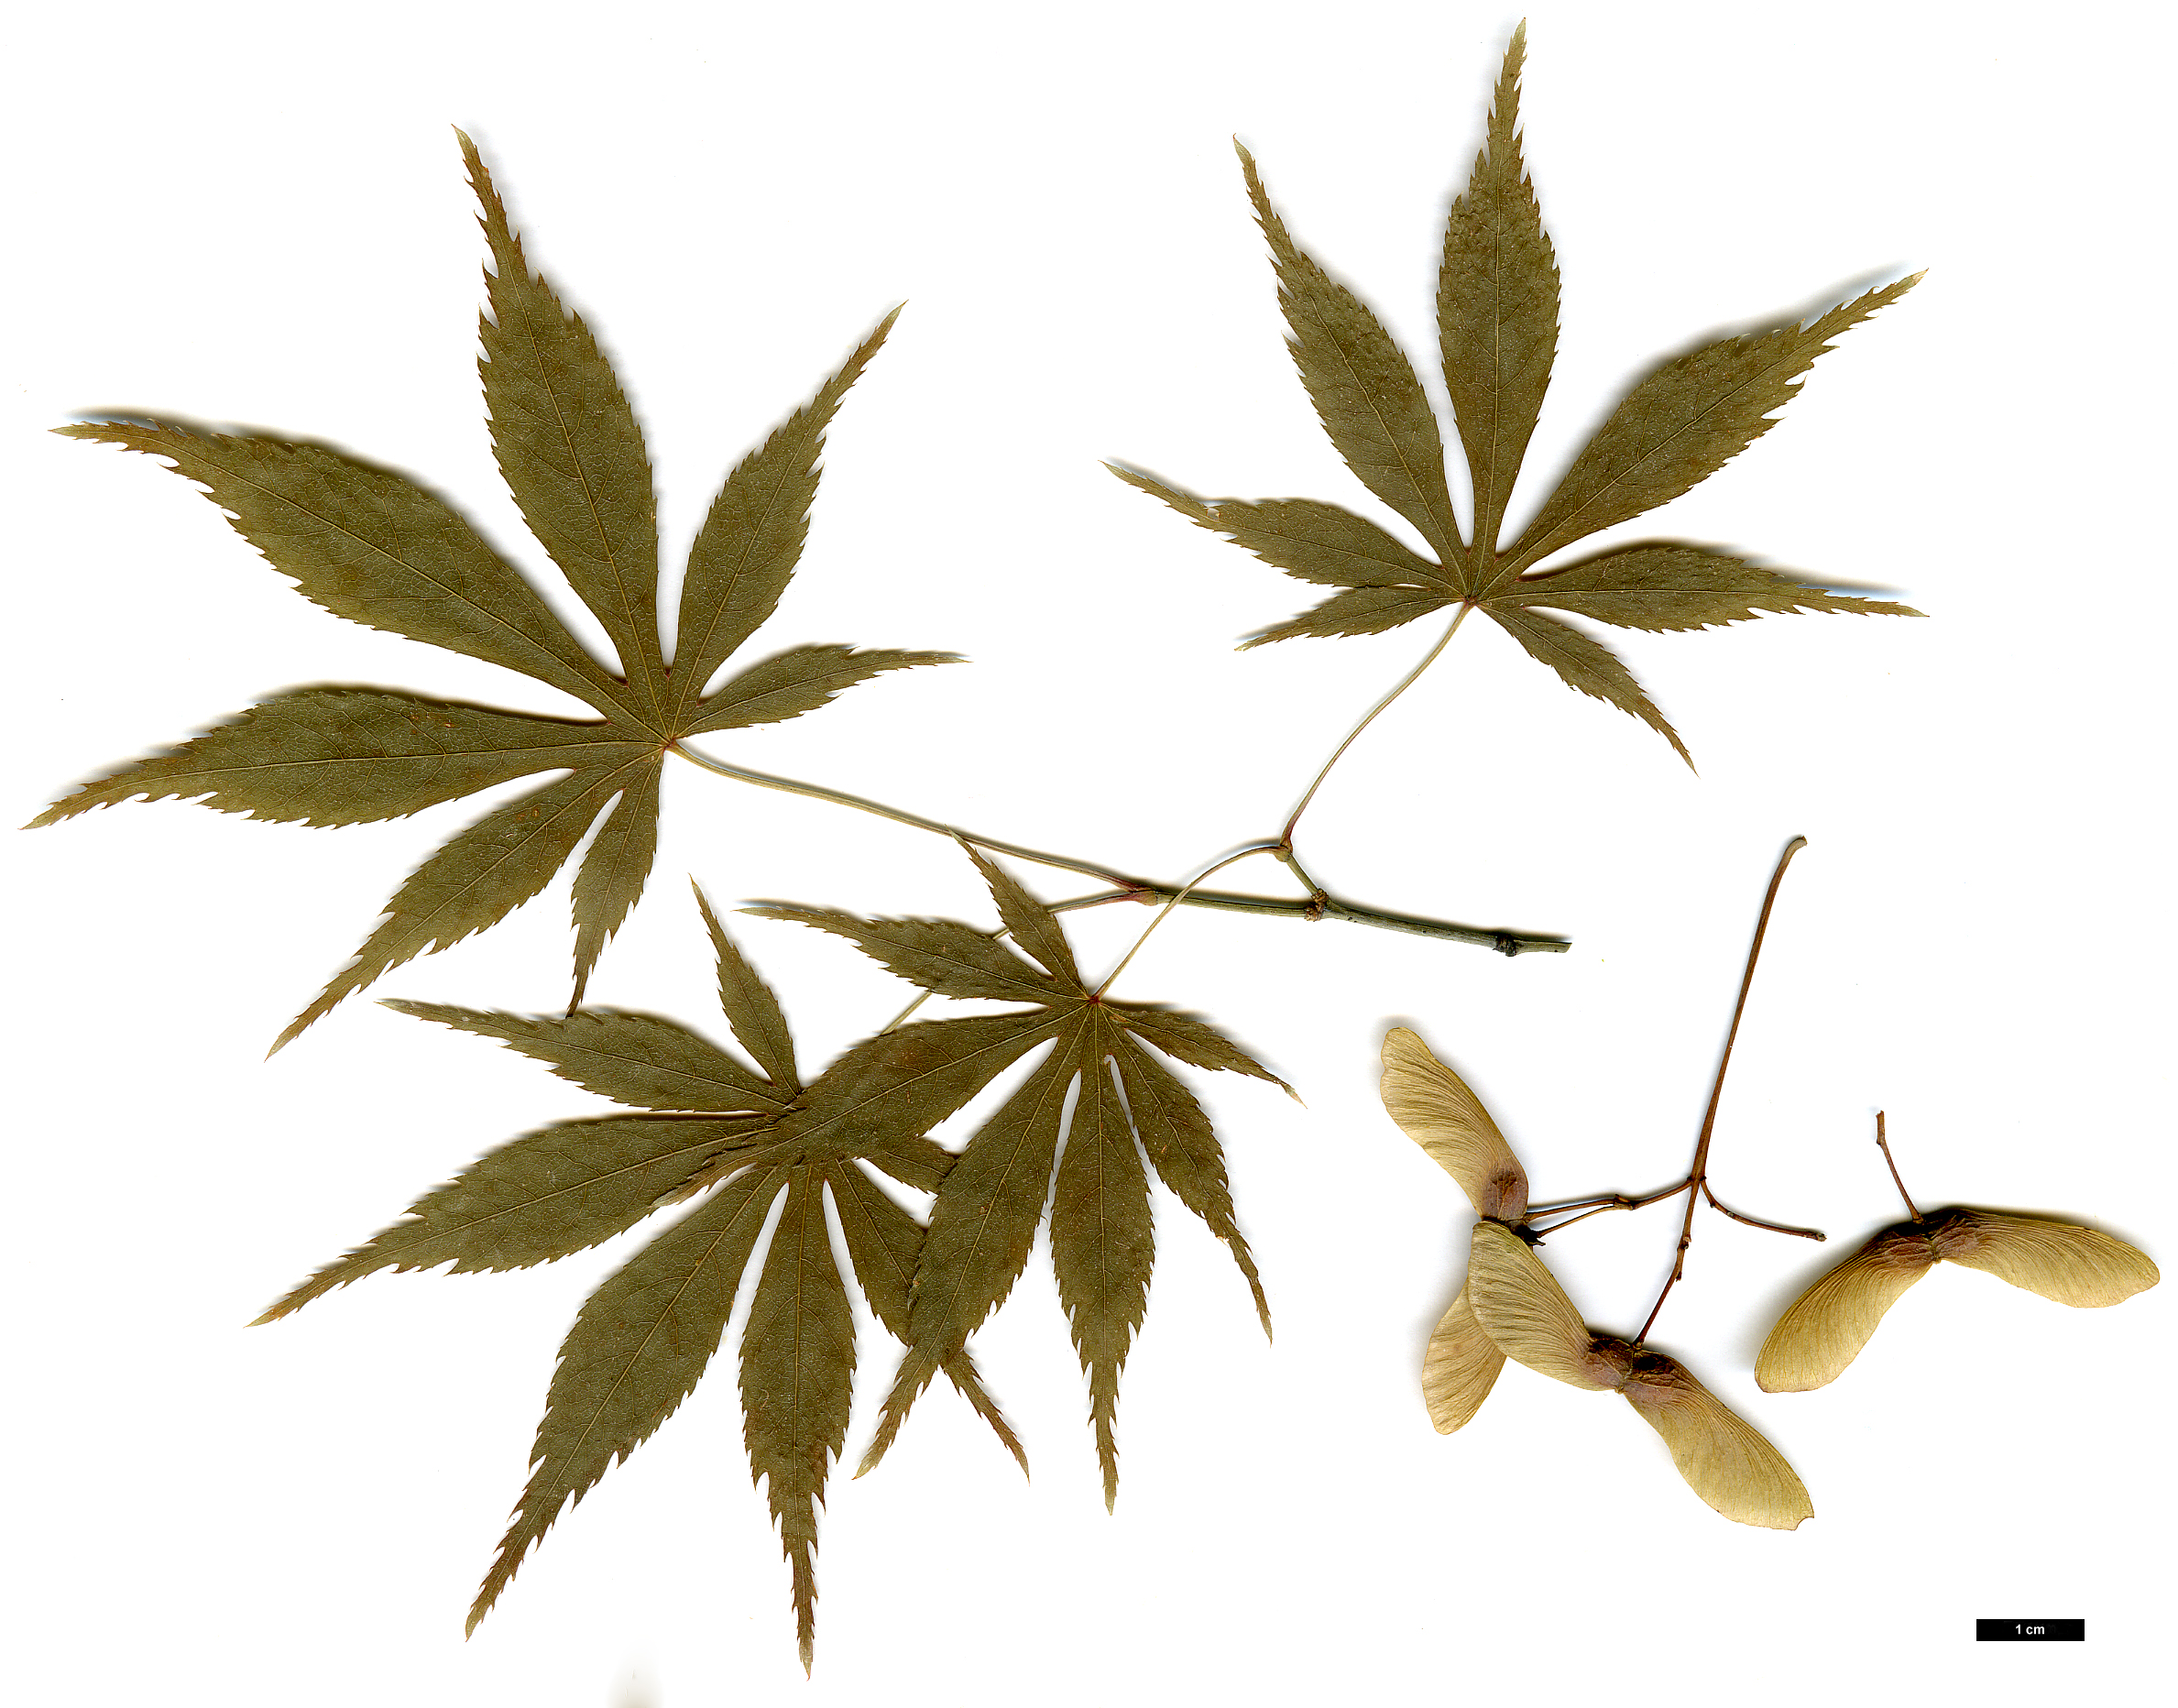 High resolution image: Family: Sapindaceae - Genus: Acer - Taxon: amoenum - SpeciesSub: var. matsumurae